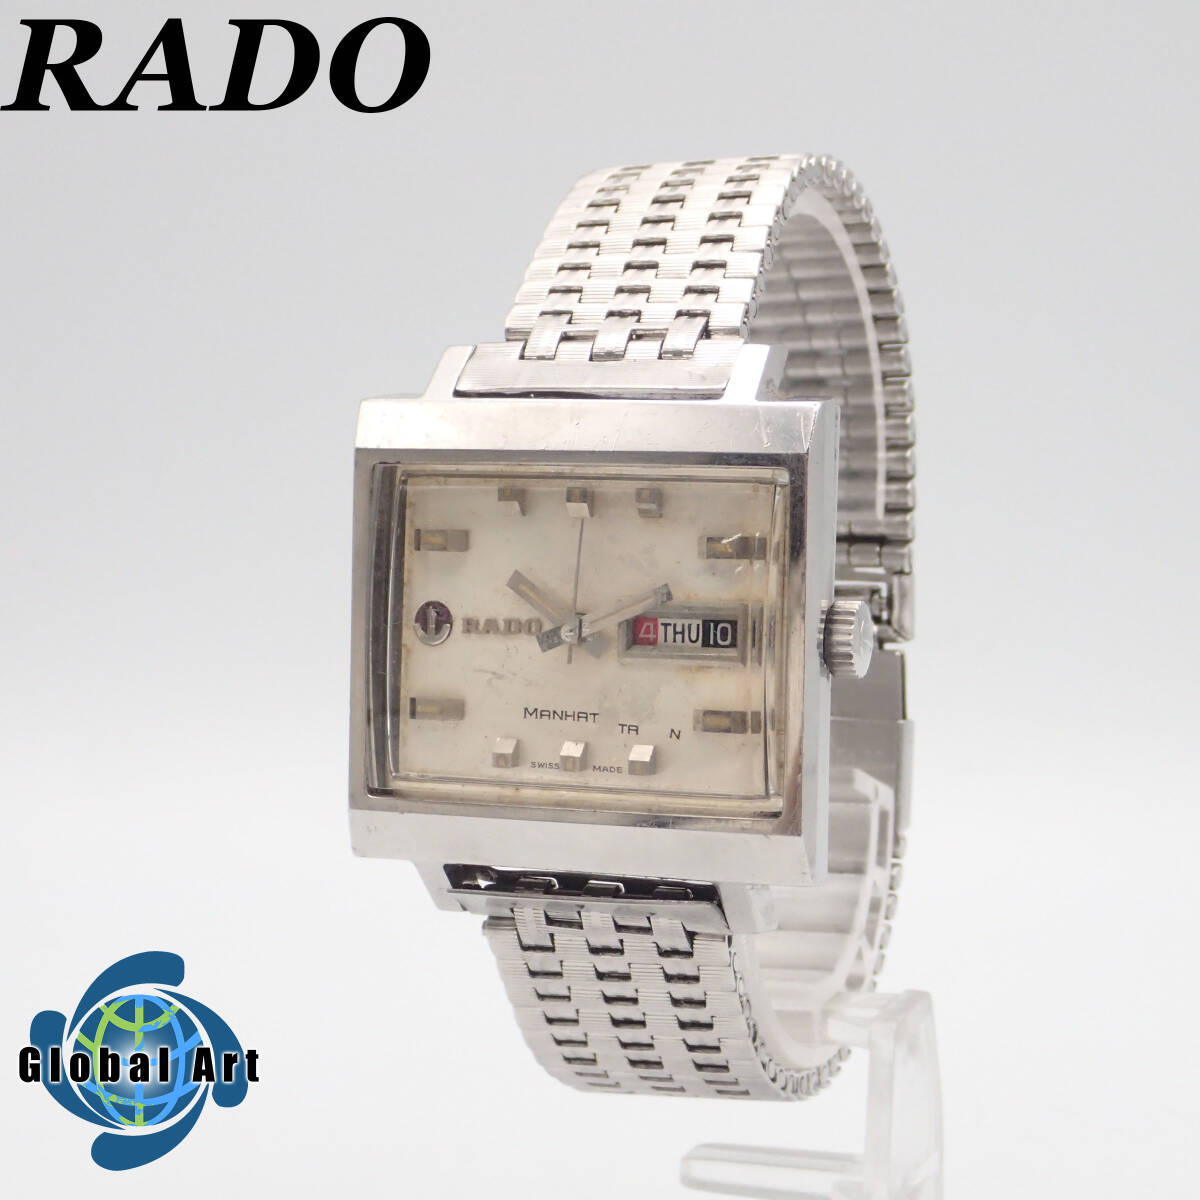 え03501/RADO ラドー/マンハッタン/自動巻/メンズ腕時計/文字盤 シルバーの画像1